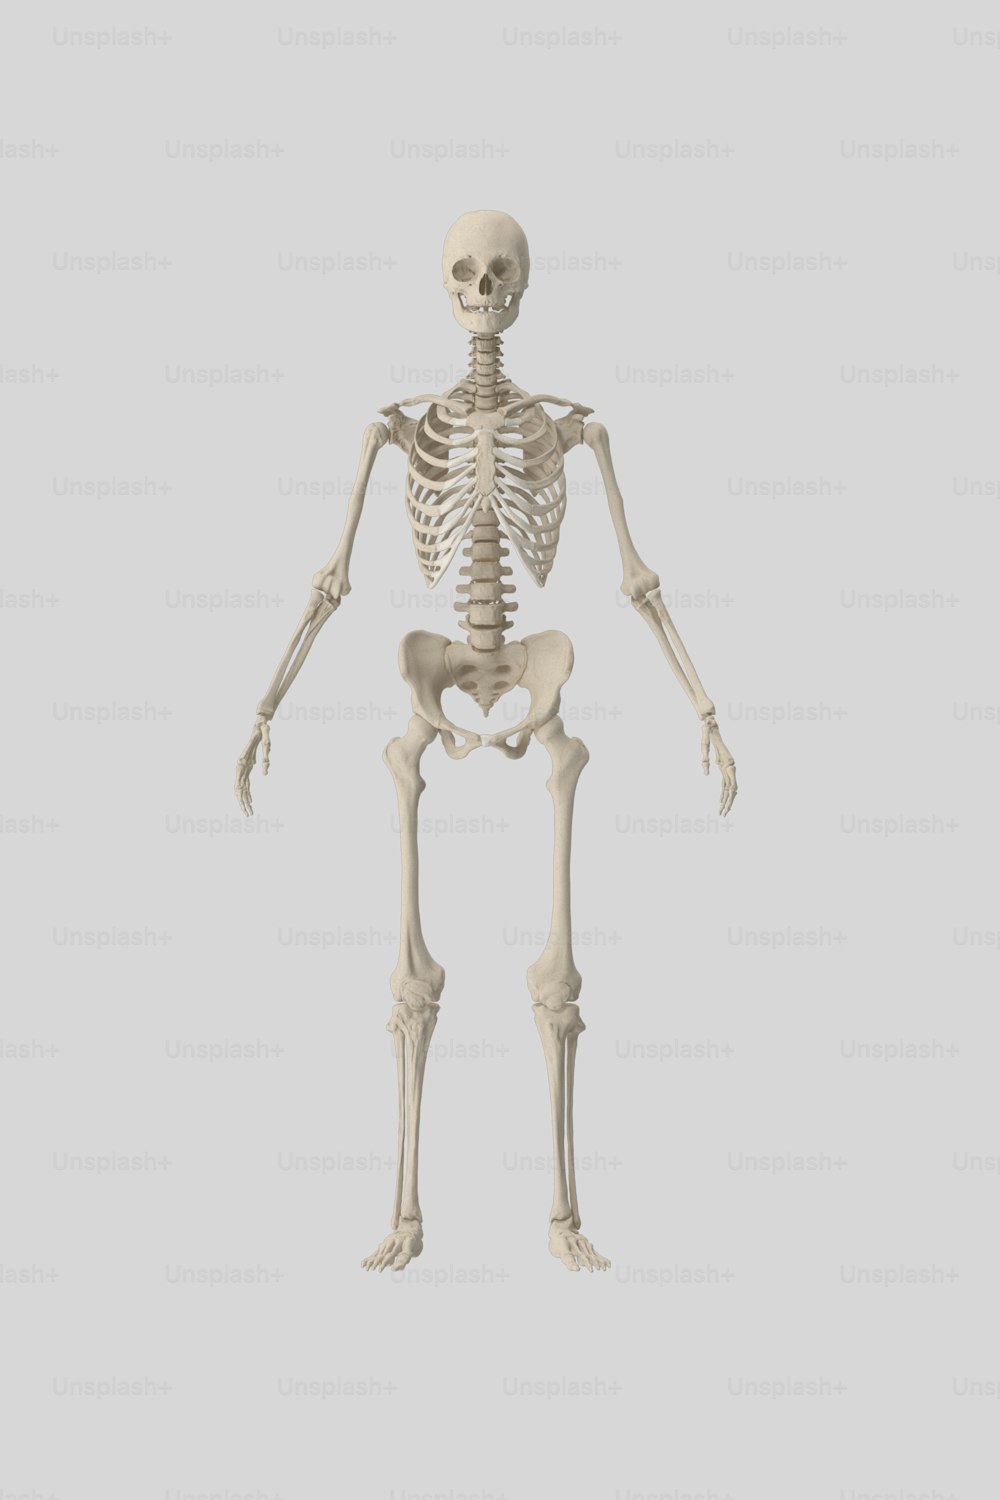 um esqueleto humano é mostrado nesta imagem